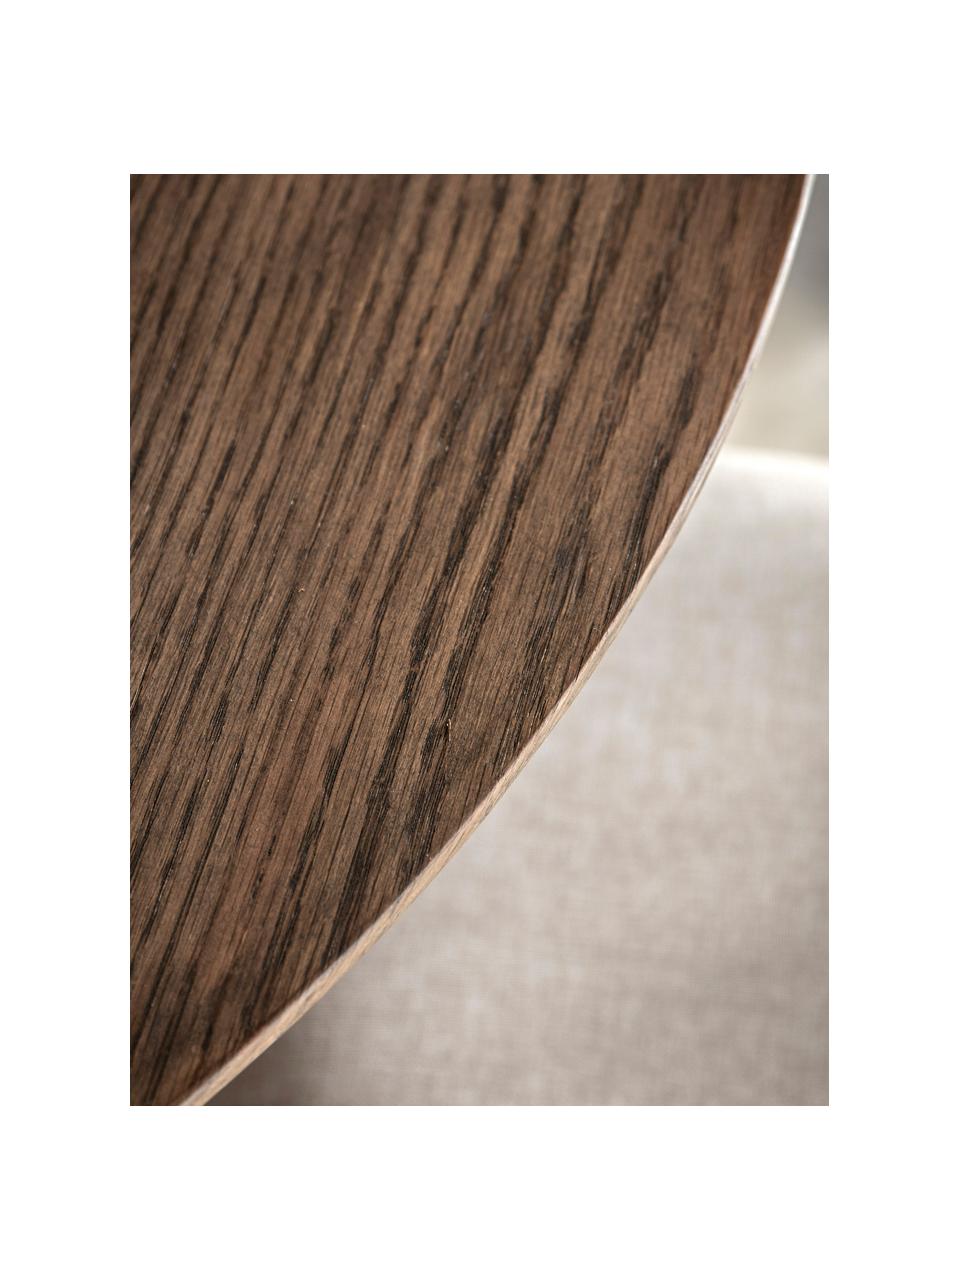 Tavolo rotondo in legno di quercia Hatfield, Ø 110 cm, Gambe: pannelli di fibra a media, Legno di quercia laccato scuro, Ø 110 cm